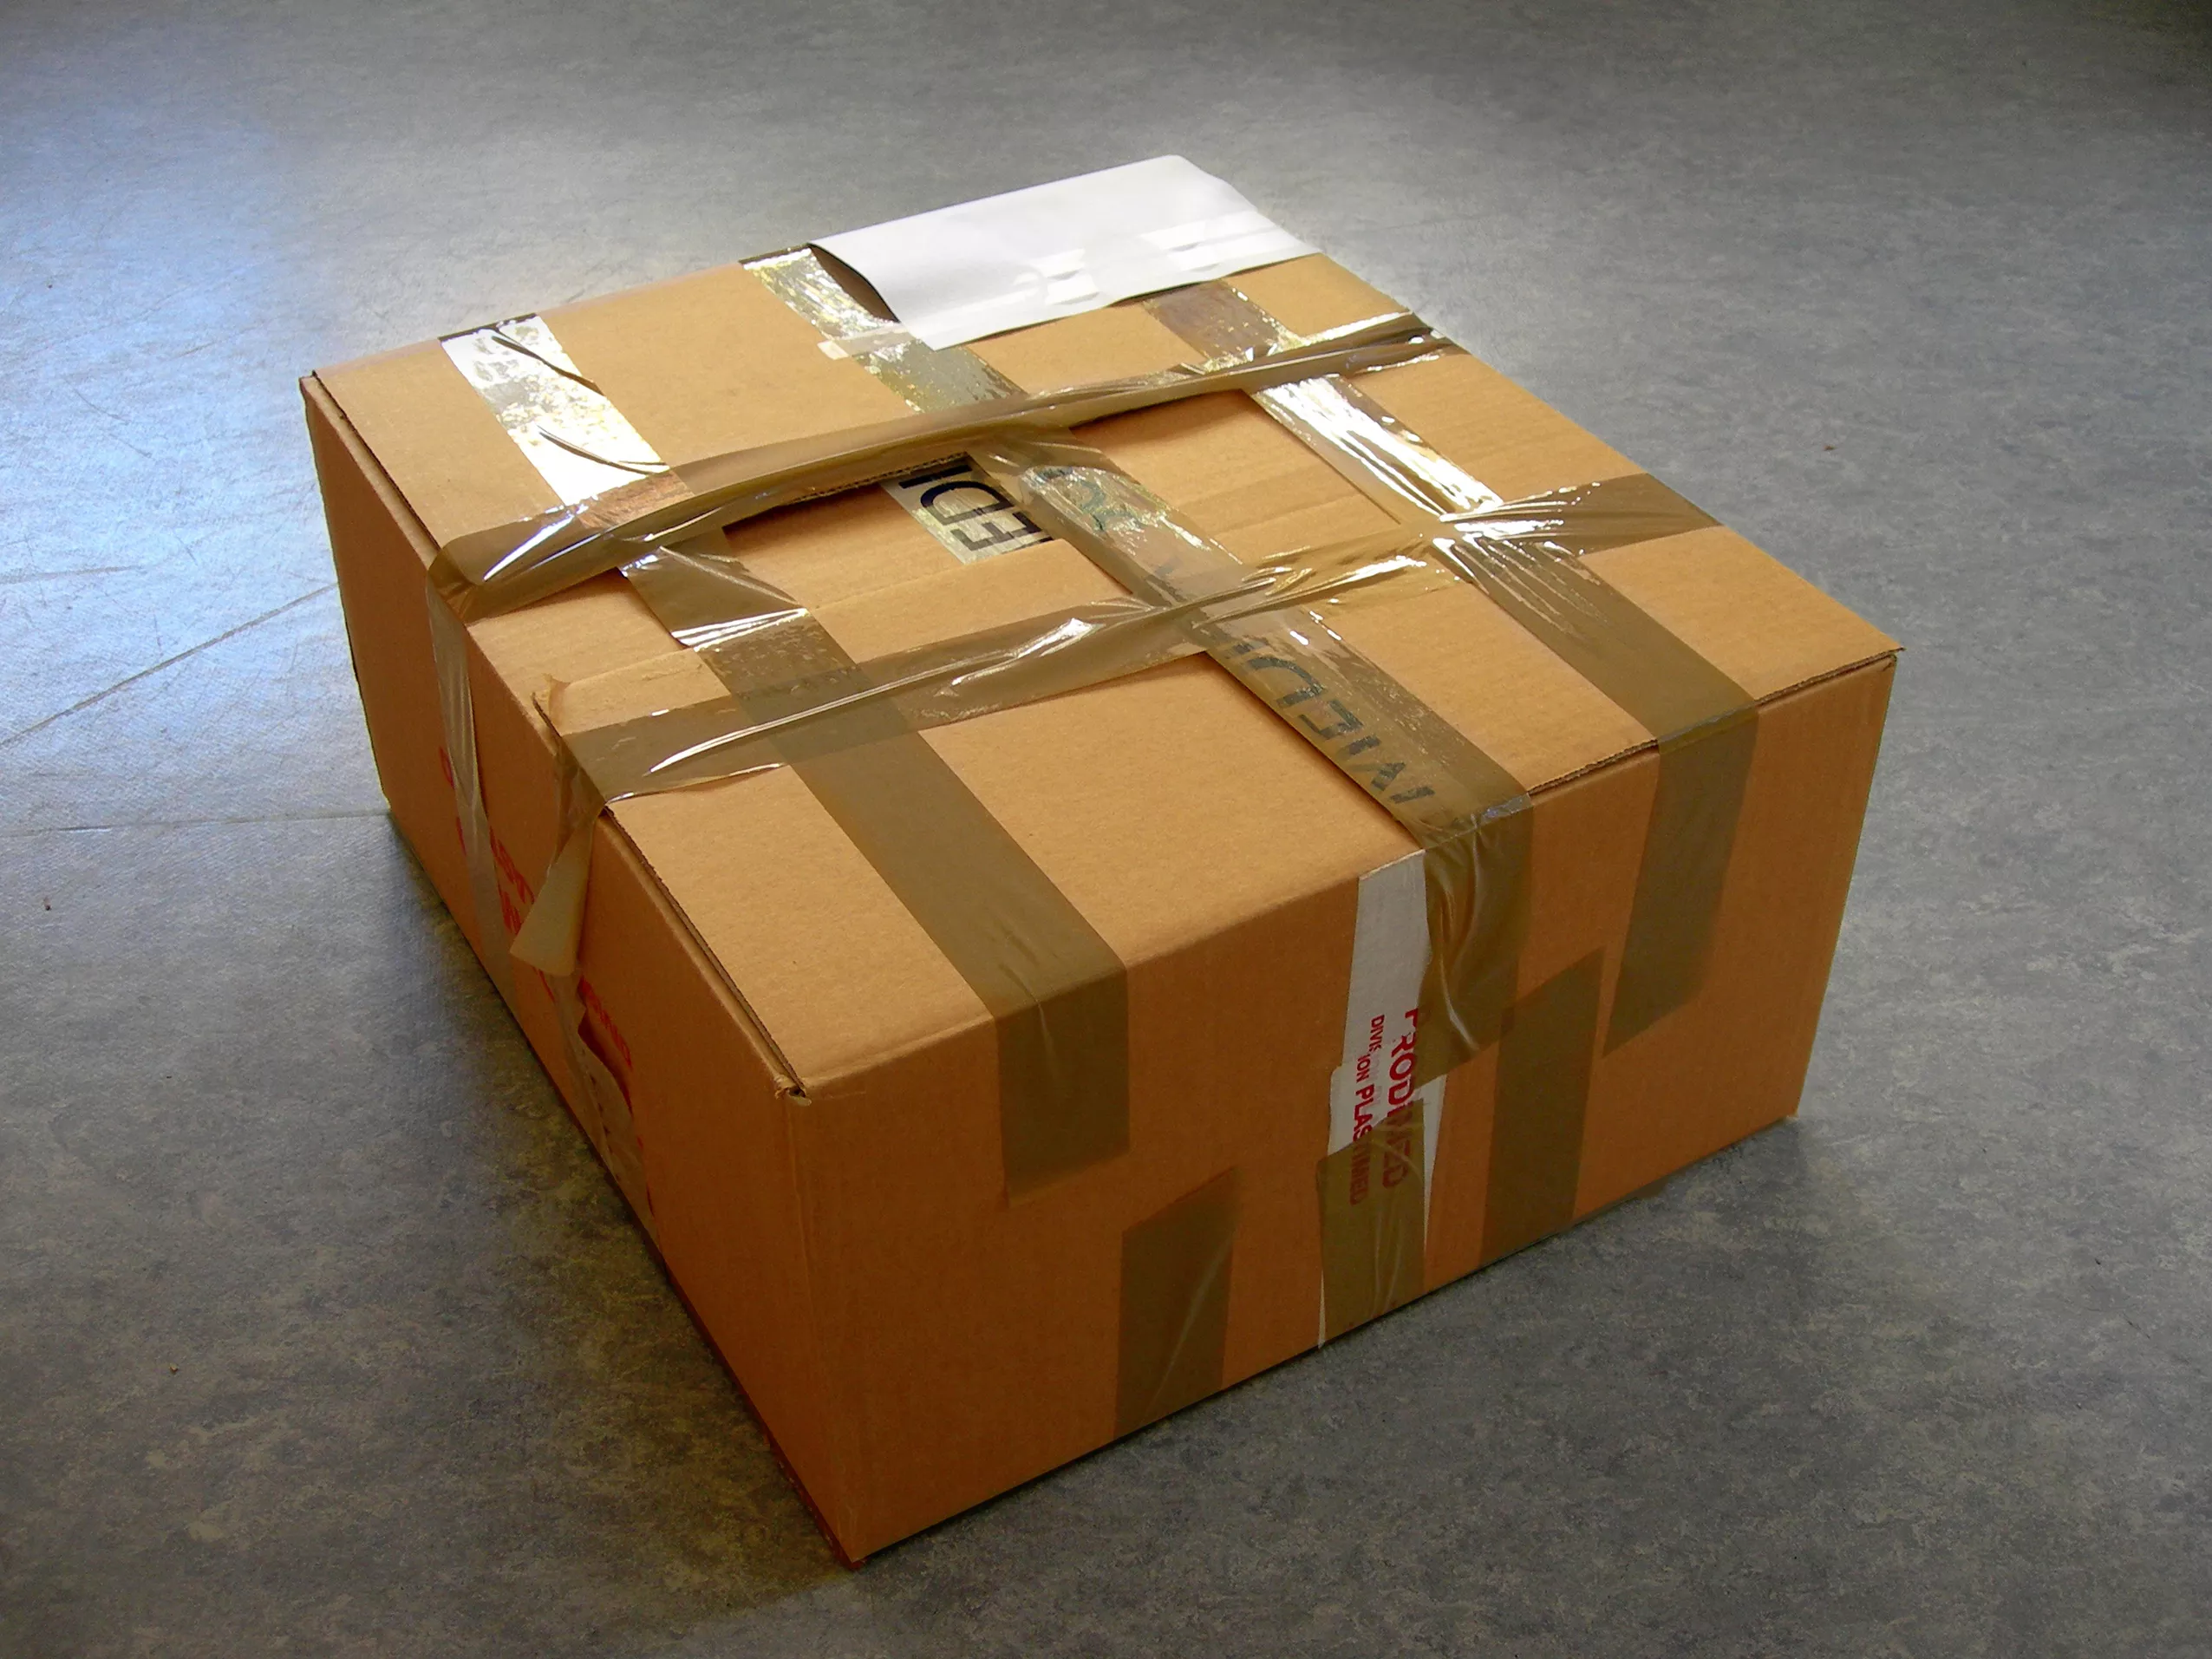 Посылка нестандартная. Упаковка посылки. Коробка посылка. Коробки с товаром. Картонная коробка запечатанная.